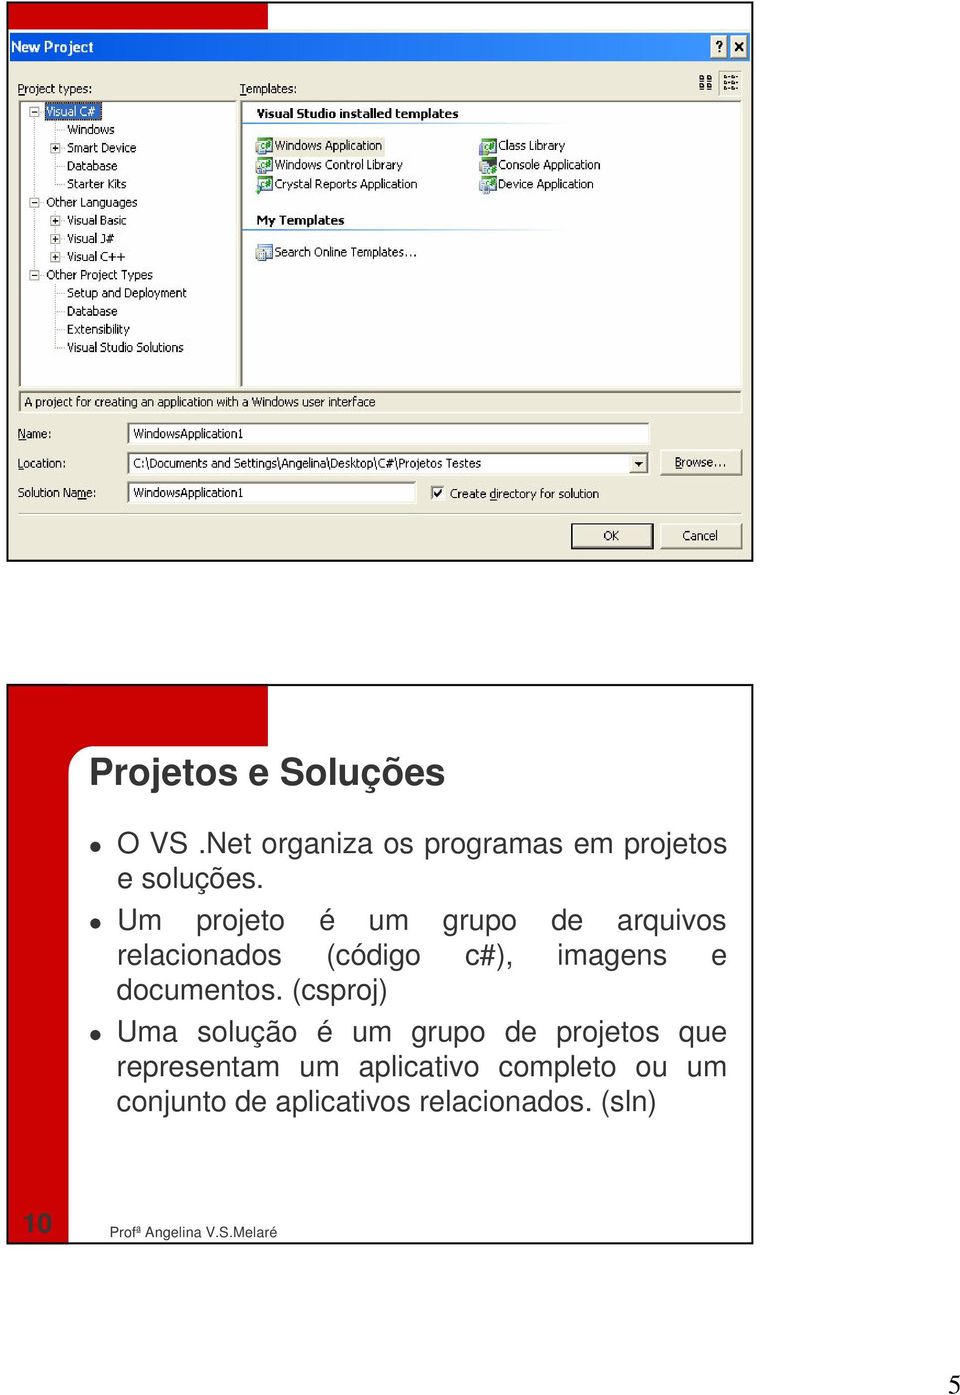 Um projeto é um grupo de arquivos relacionados (código c#), imagens e